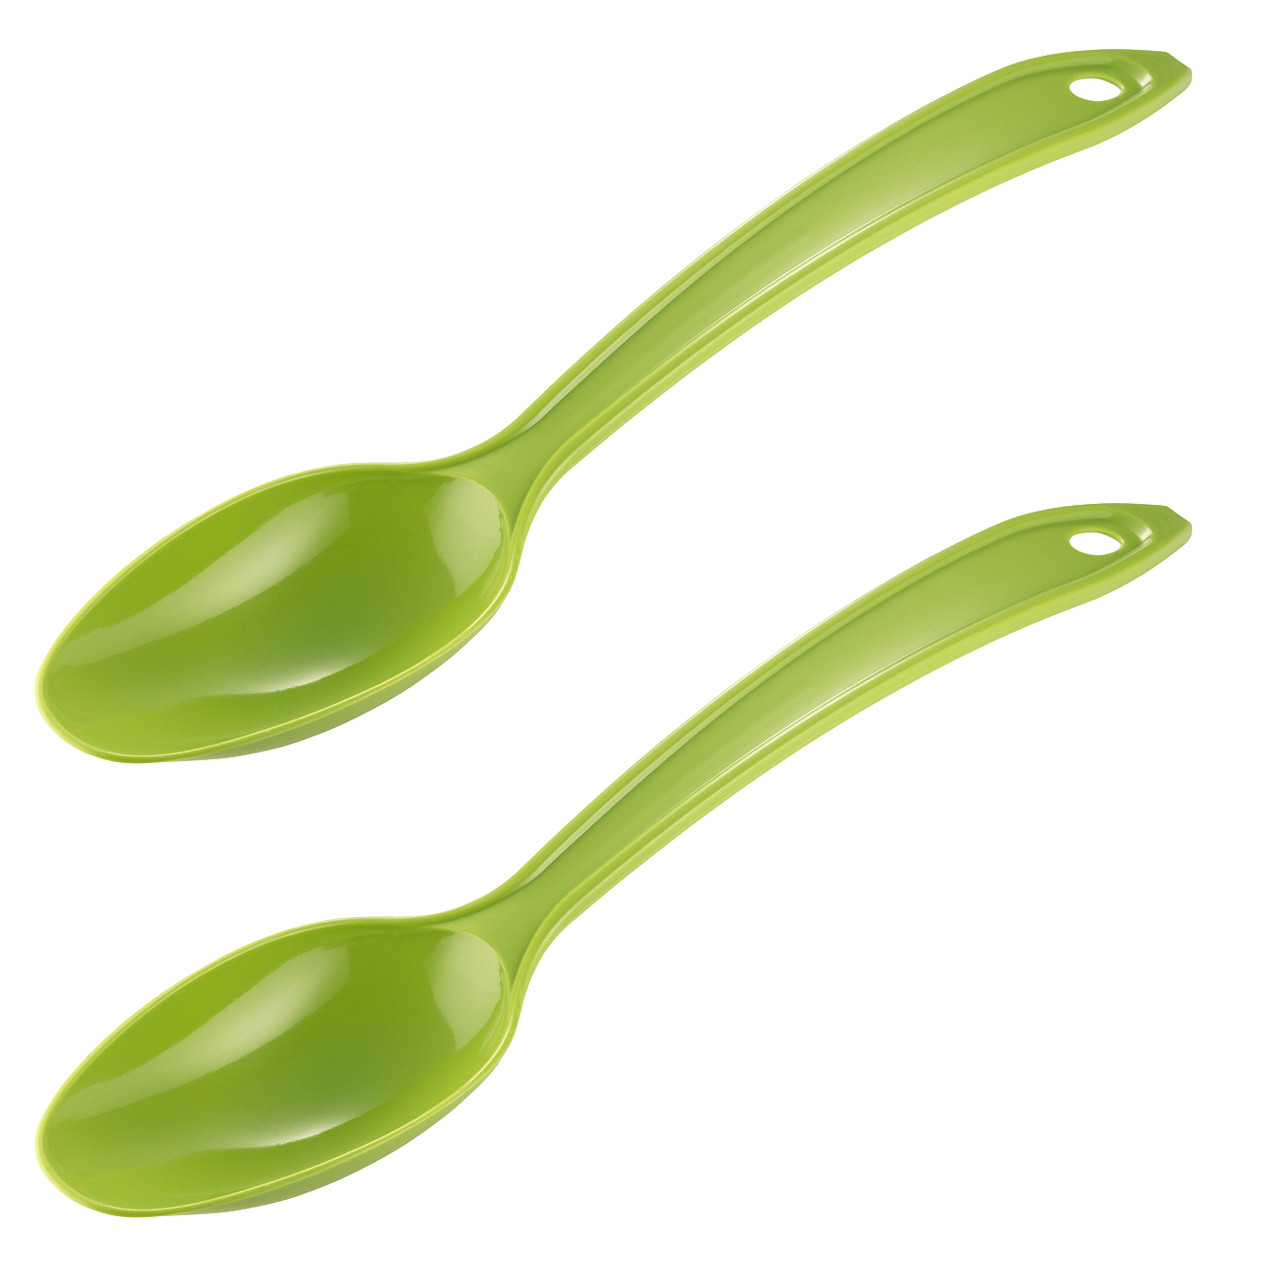 Nylon Spoons, set of 2